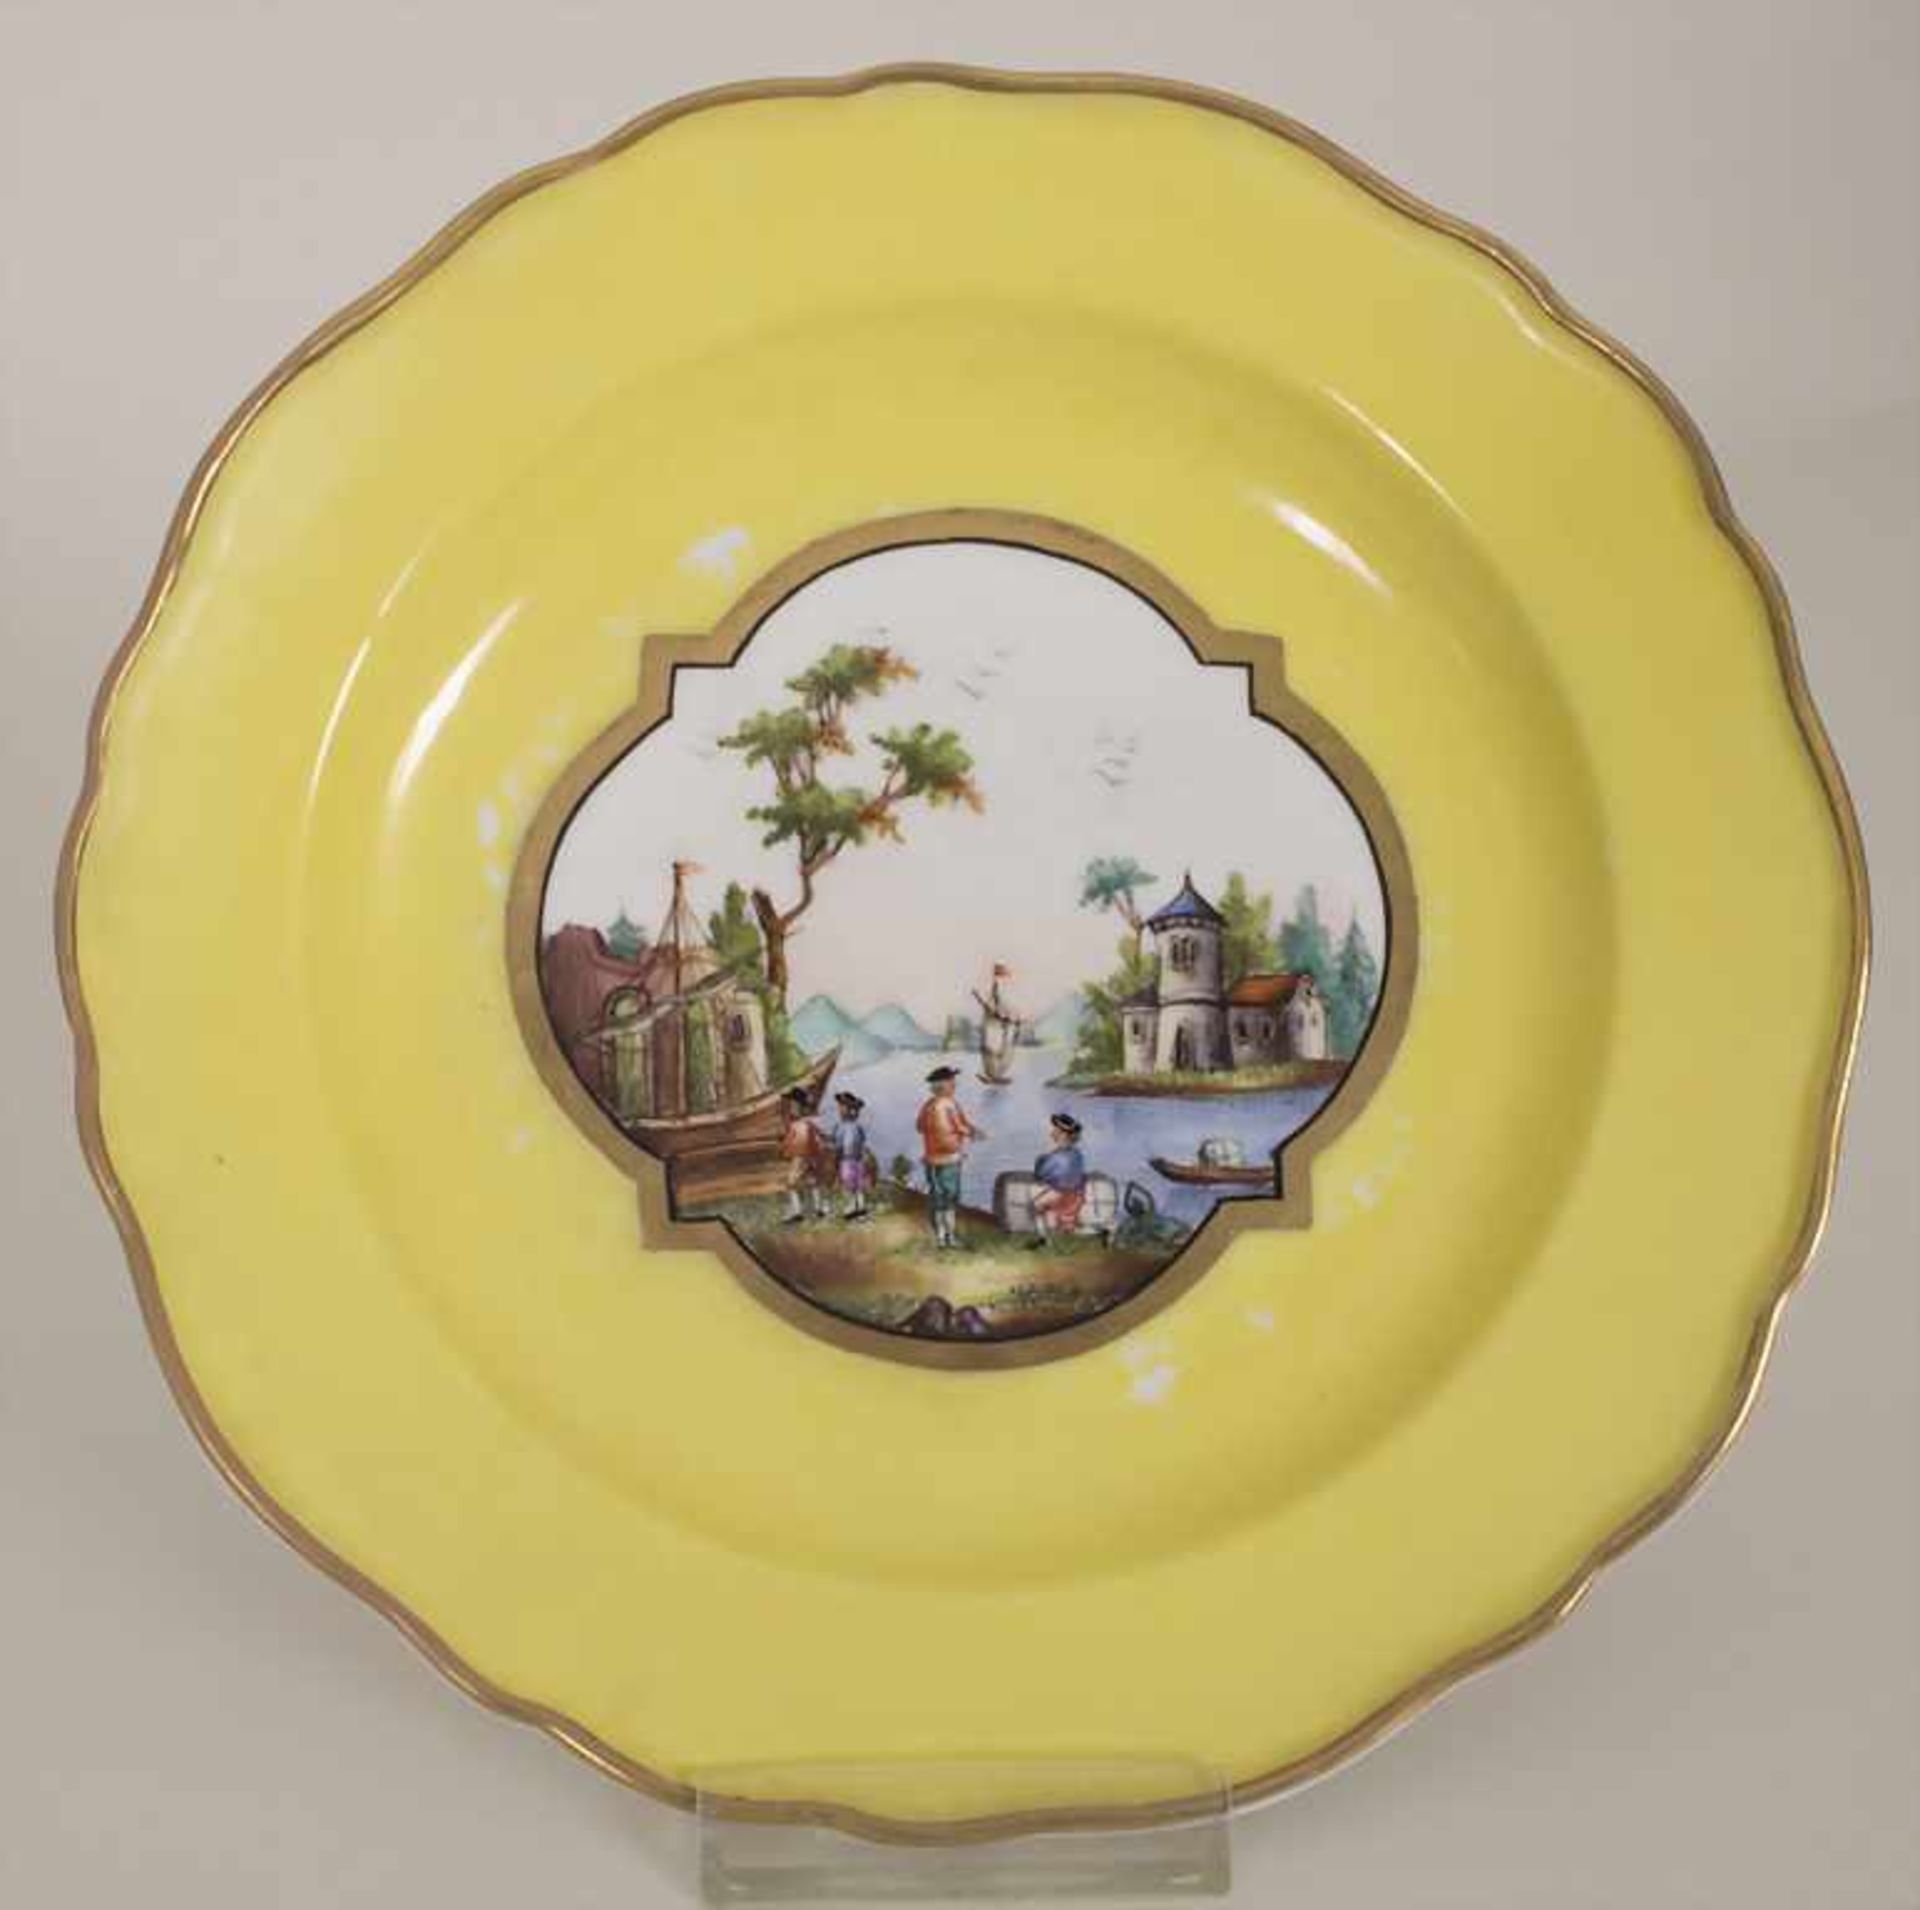 6 Ansichtenteller / 6 plates with harbour scenes, Meissen, um 1850Material: Porzellan, bemalt u. - Bild 17 aus 19